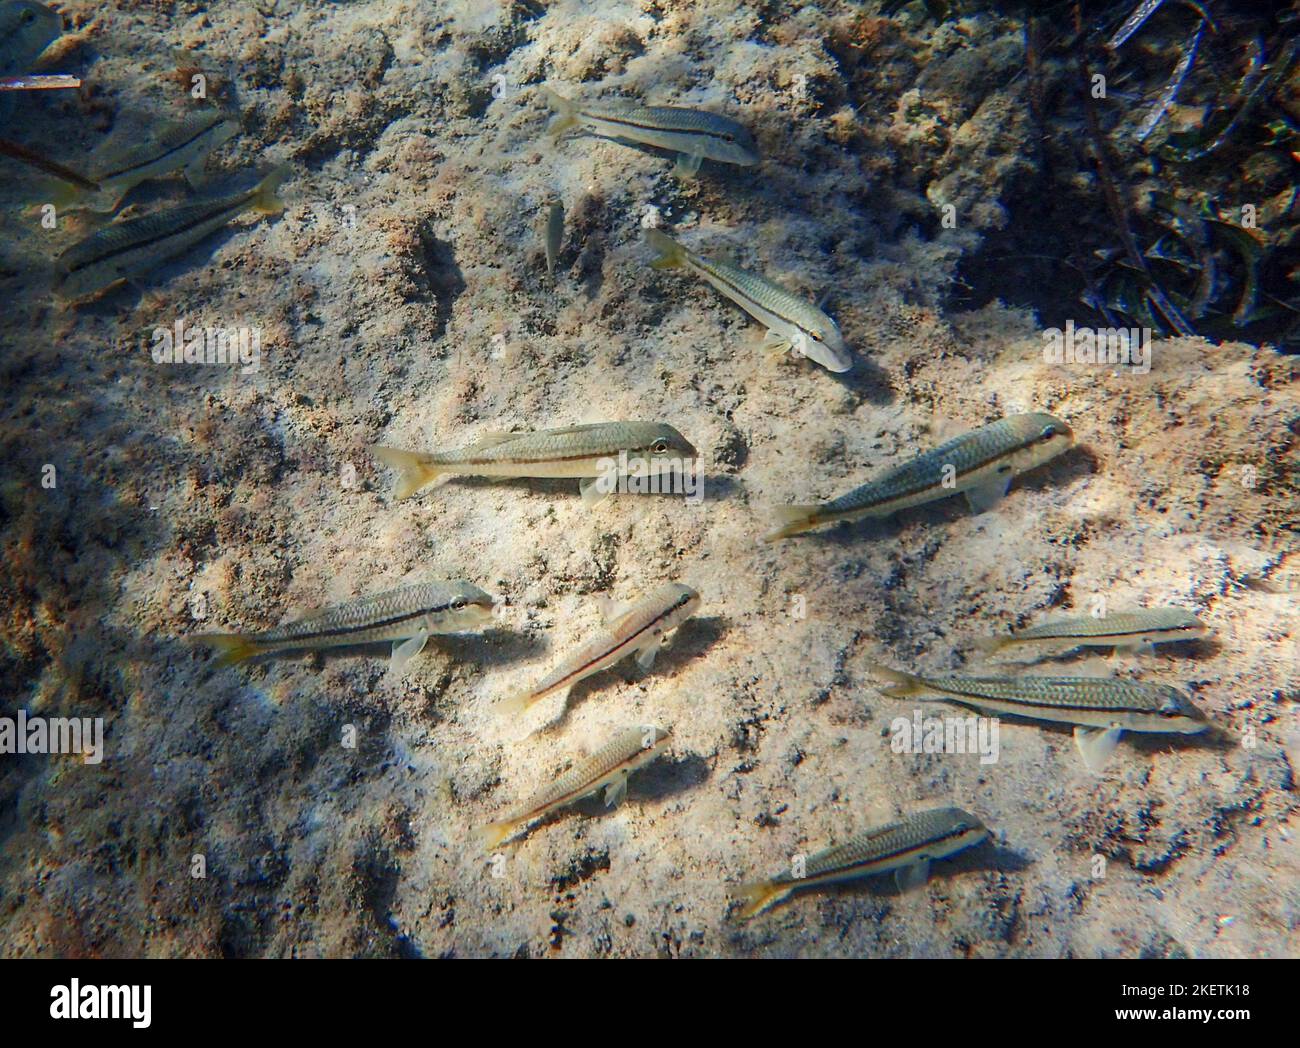 Hardyhead-Silberfisch (Atherinomorus lacunosus), der am Meeresboden des östlichen Mittelmeers, Zypern, ernährt wird. Stockfoto